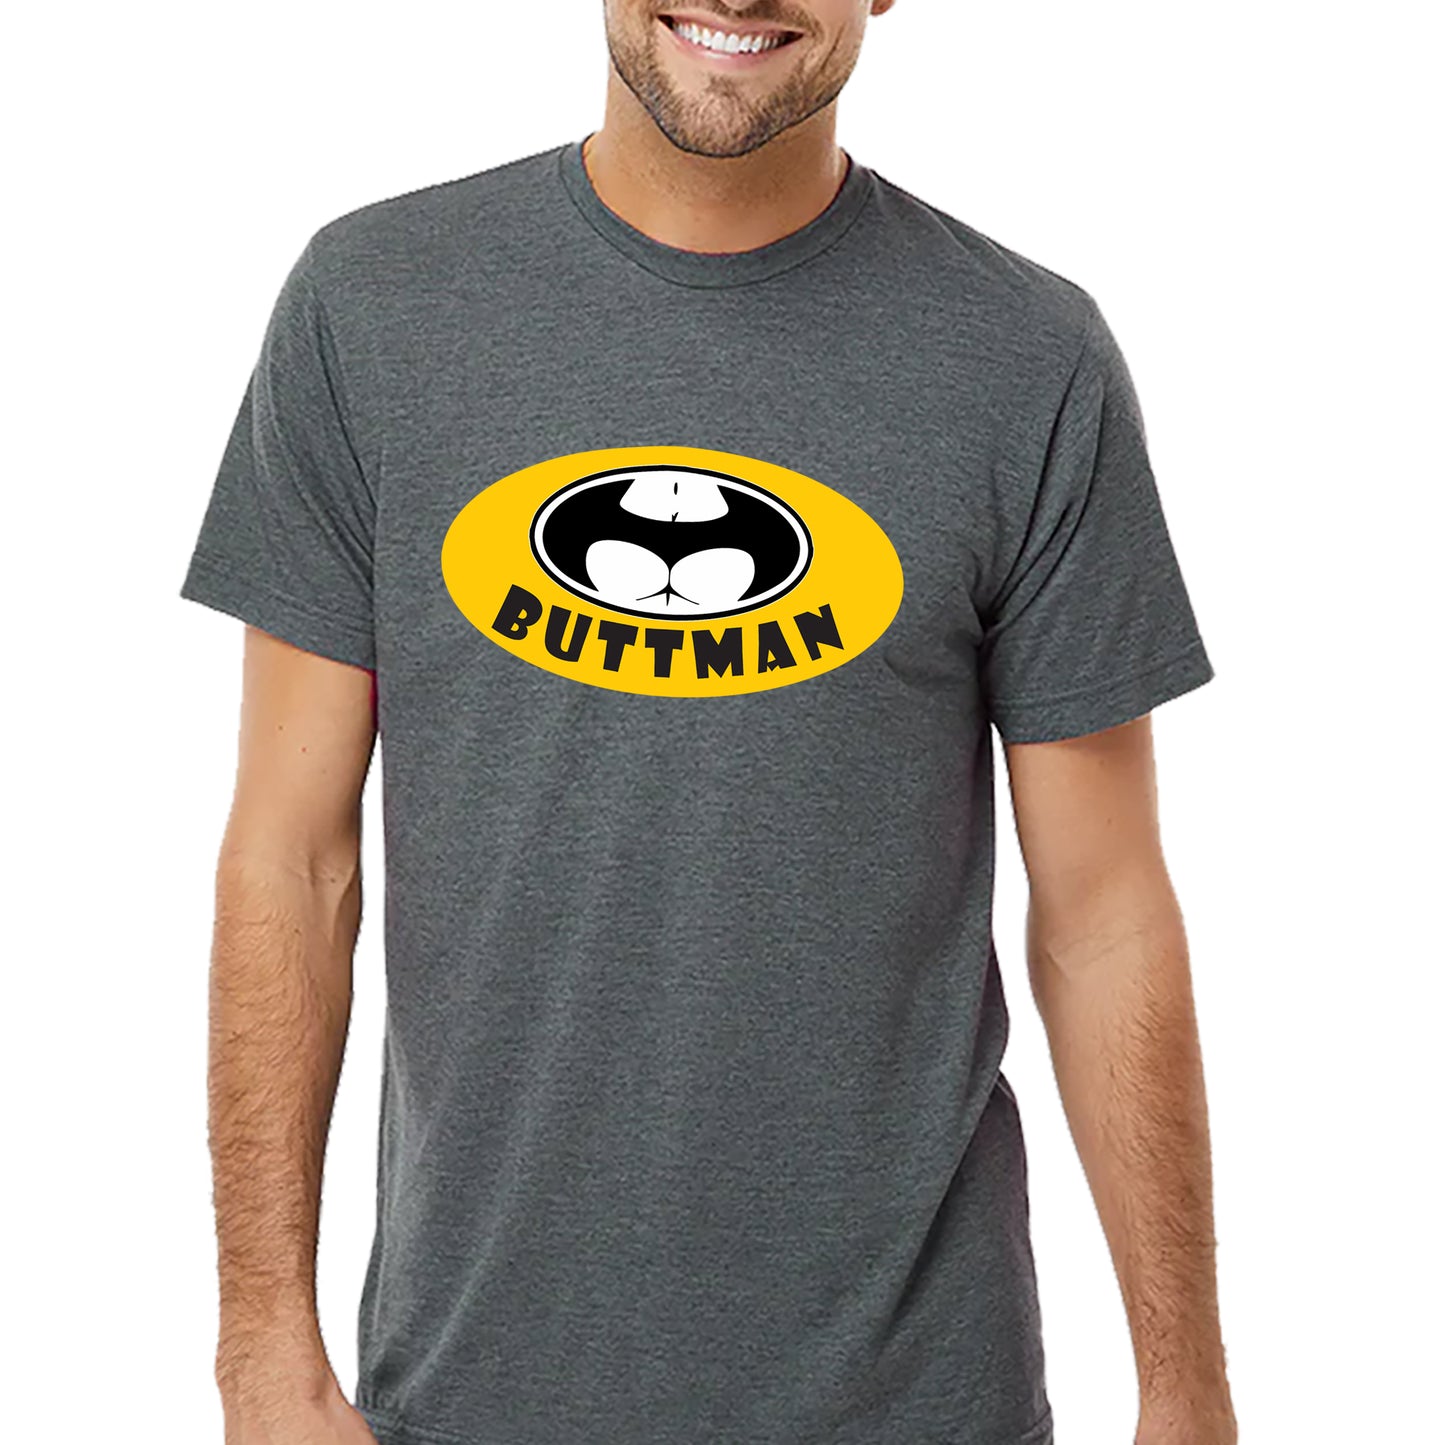 Buttman T-Shirt